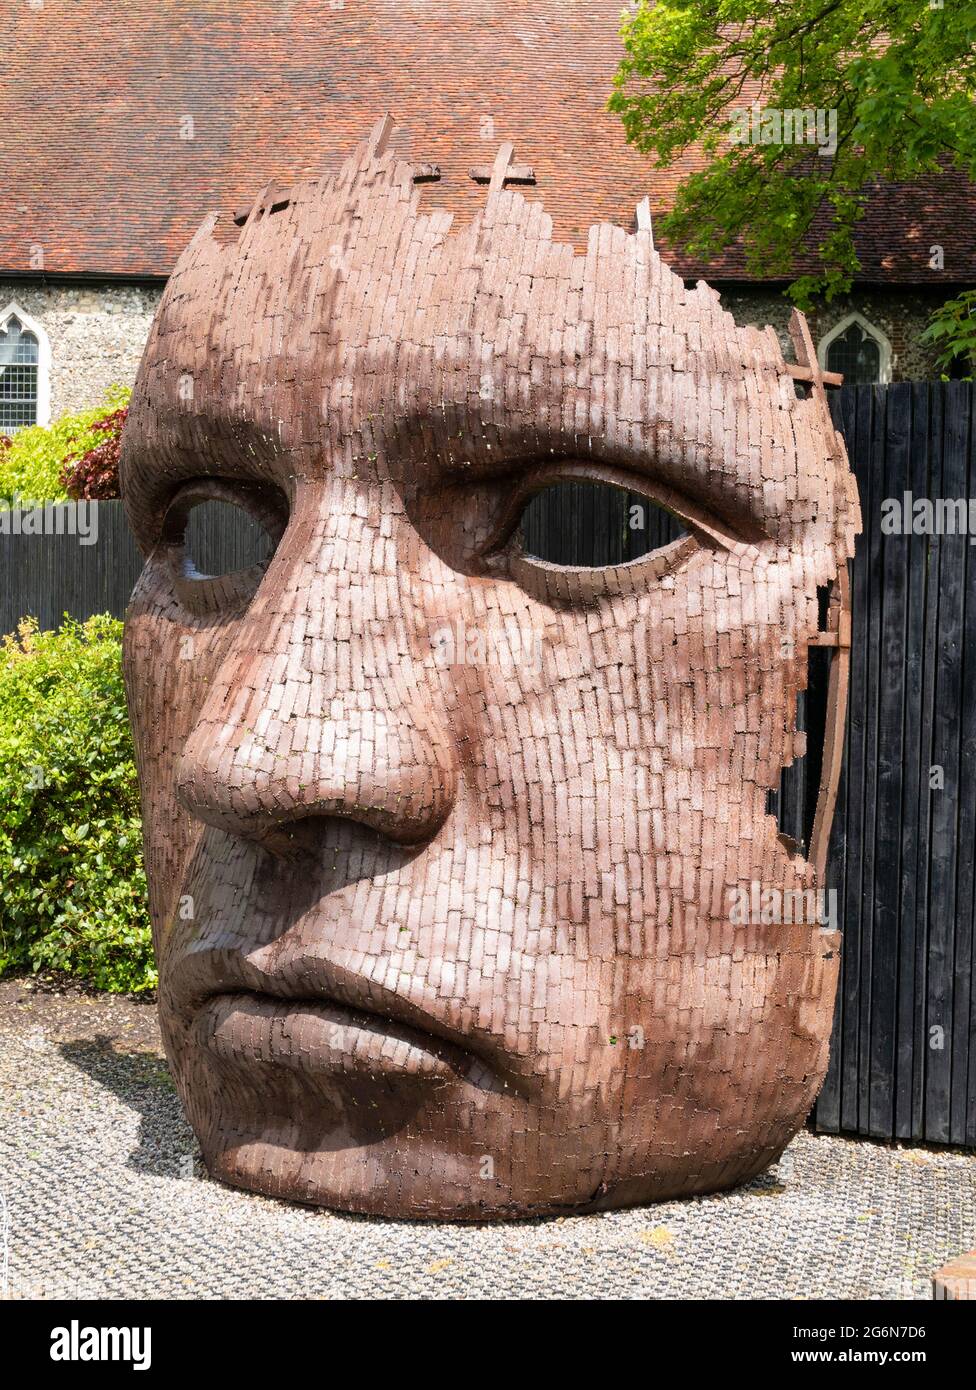 Sculpture de masque de cloison par Rick Kirby, inspirée par une ligne de la pièce de Christopher Marlowe Dr Faustus à l'extérieur du théâtre Marlowe Canterbury Kent Angleterre Banque D'Images